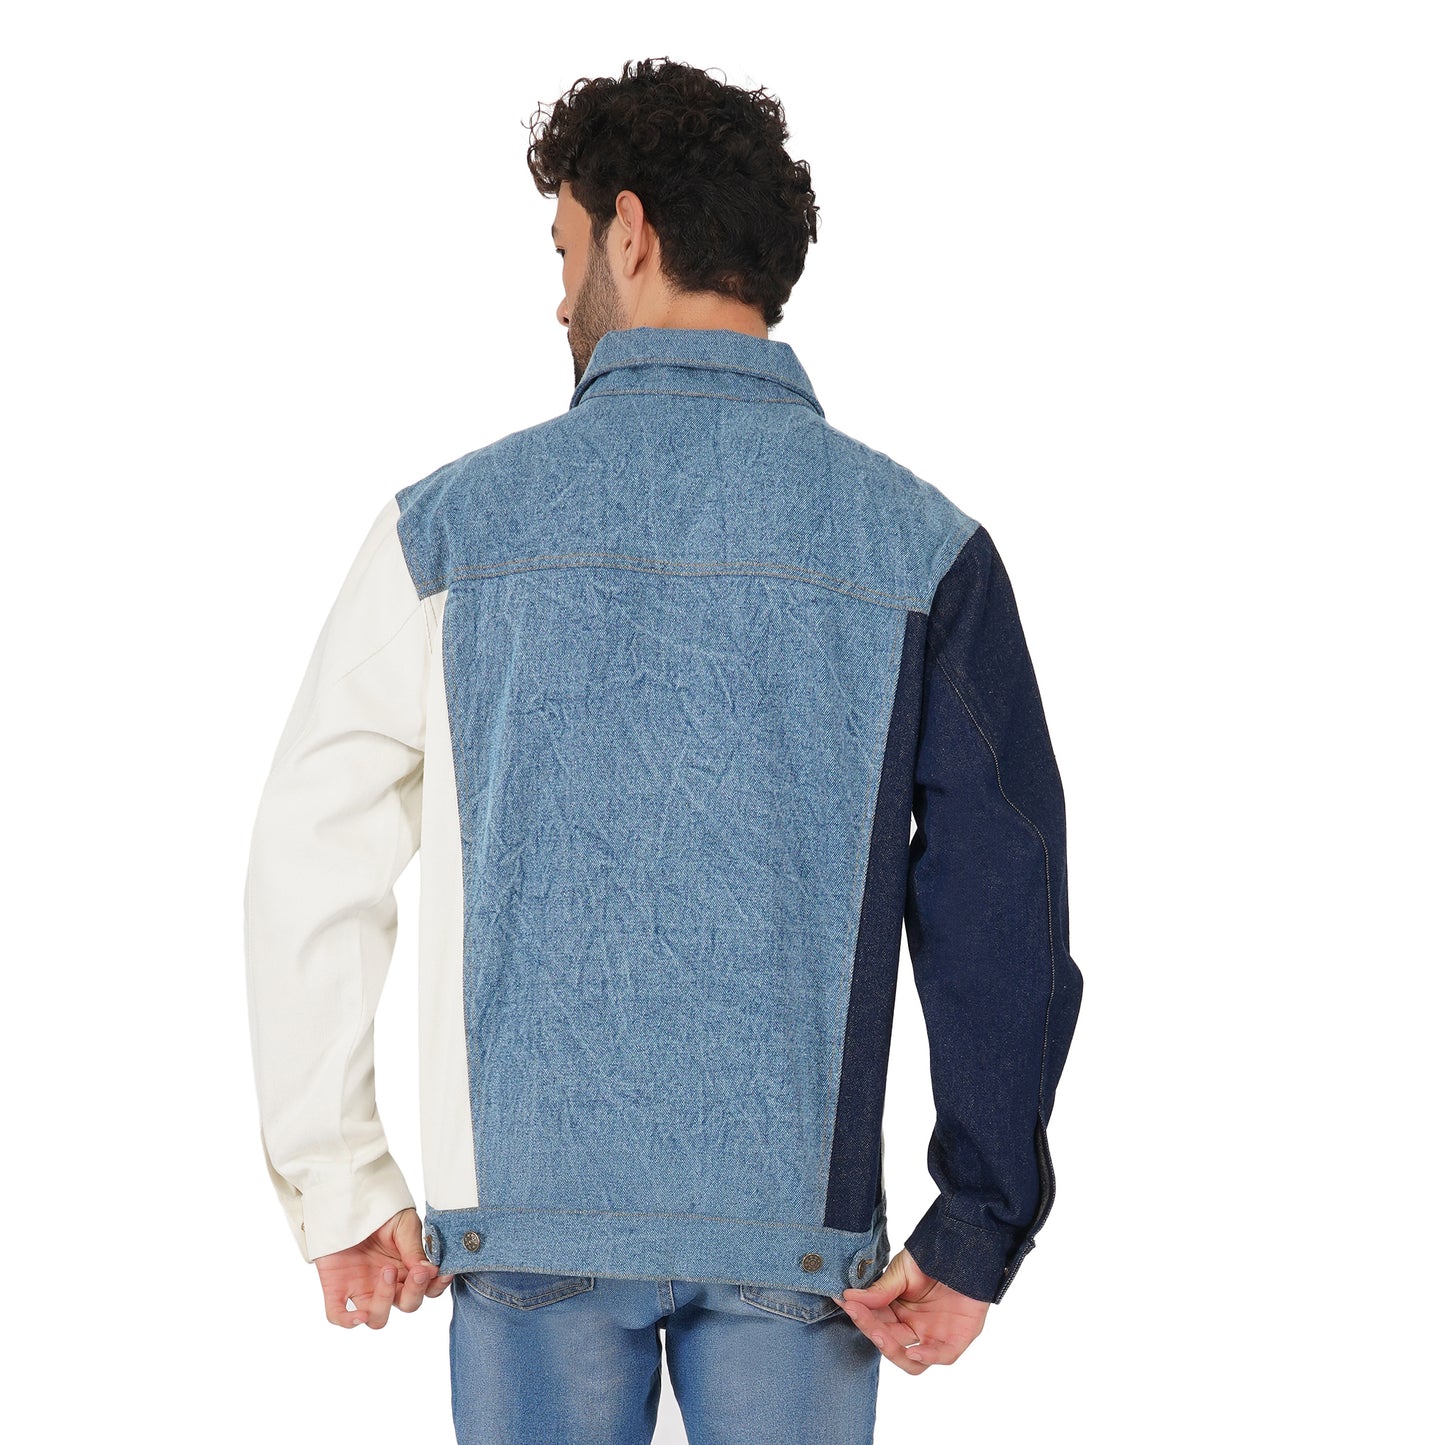 SLAY. Men's Full Sleeves Colorblock Denim Jacket-clothing-to-slay.myshopify.com-Jacket